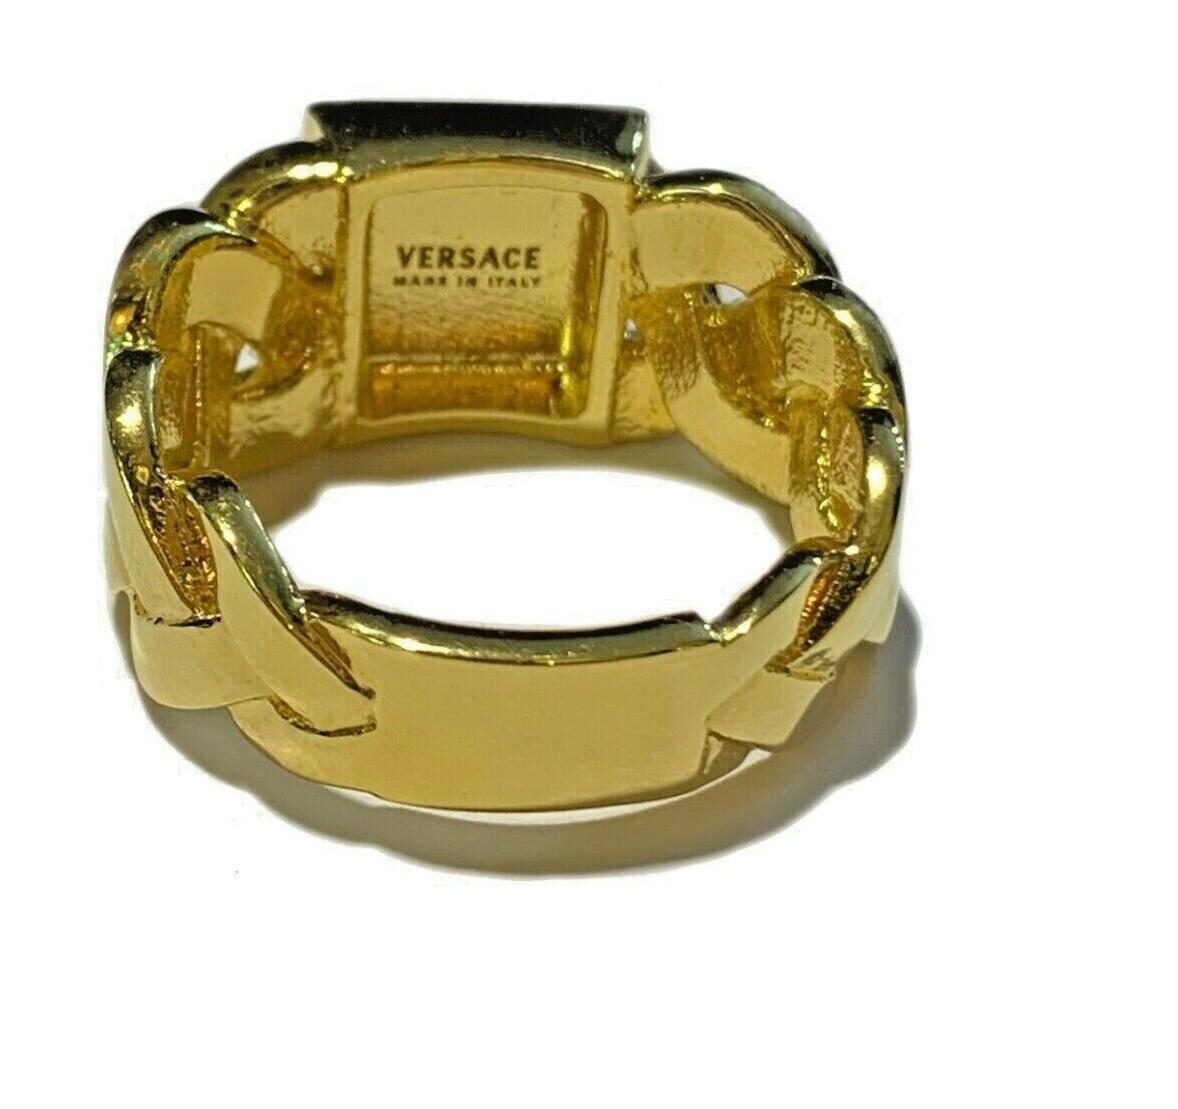 versace gold ring 18k medusa